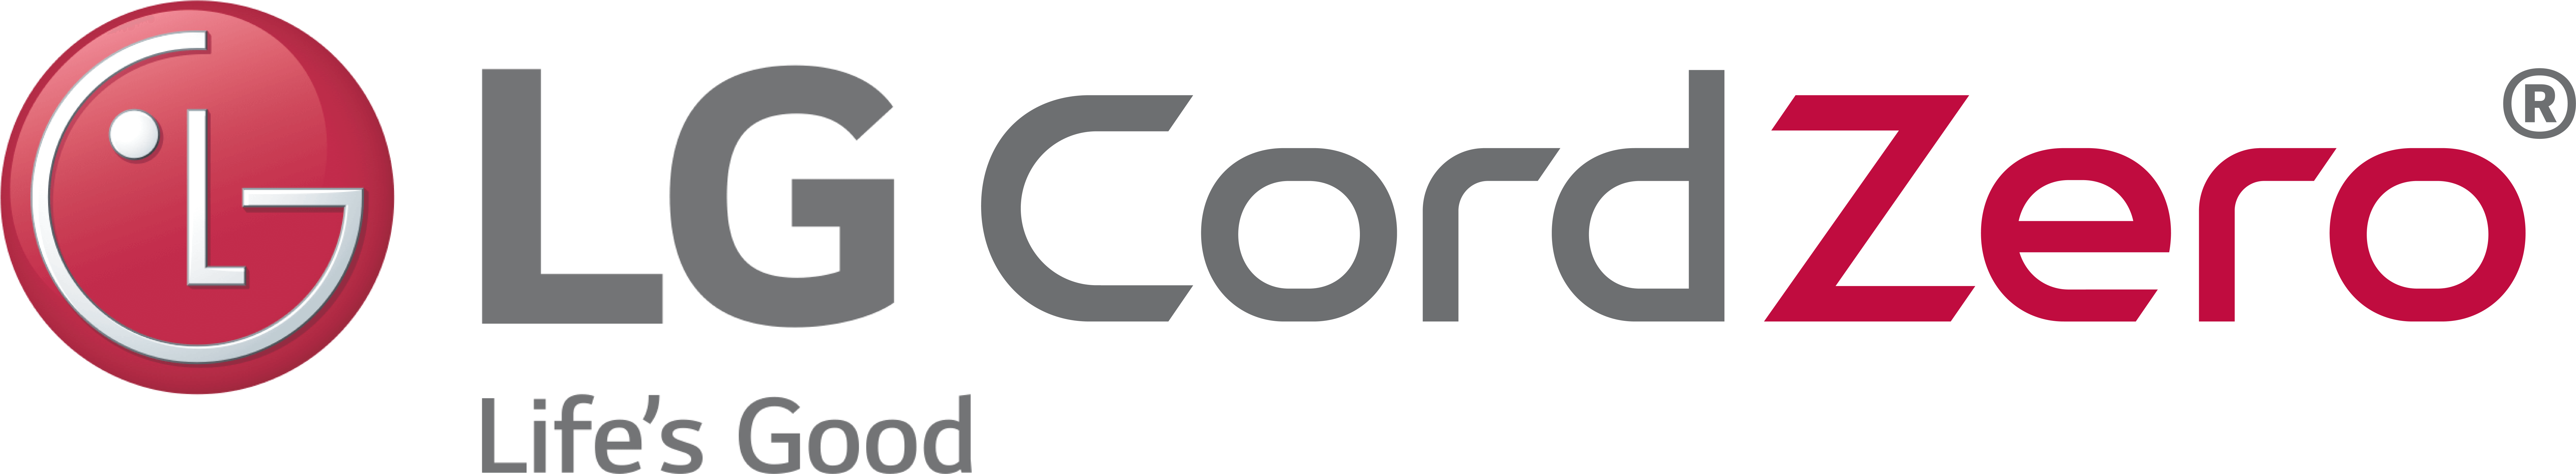 L G Cord Zero Logo PNG